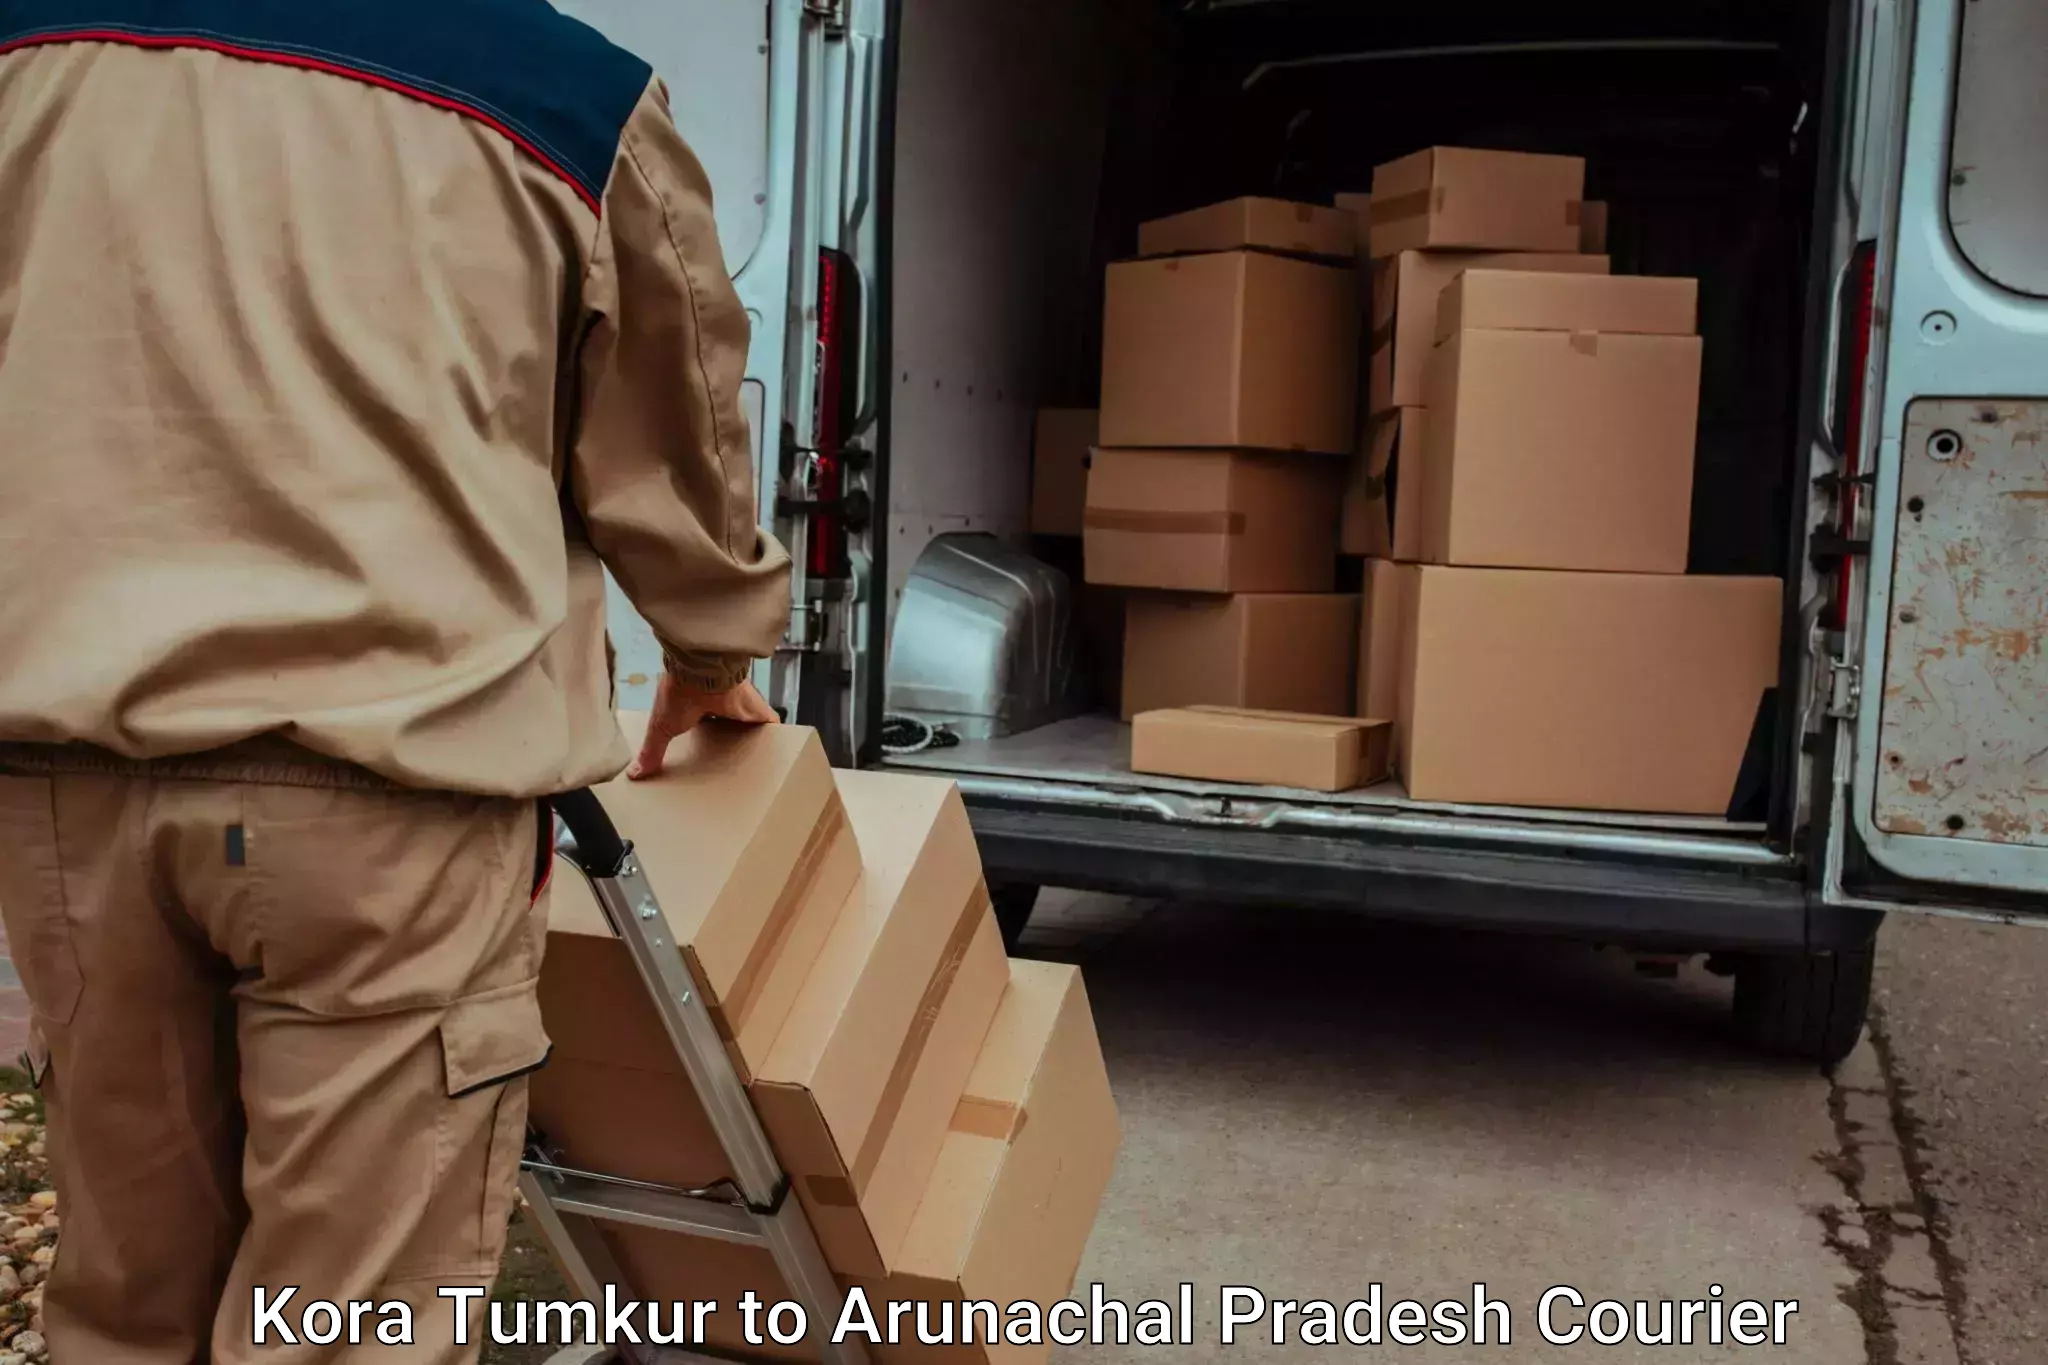 Furniture transport company Kora Tumkur to East Kameng